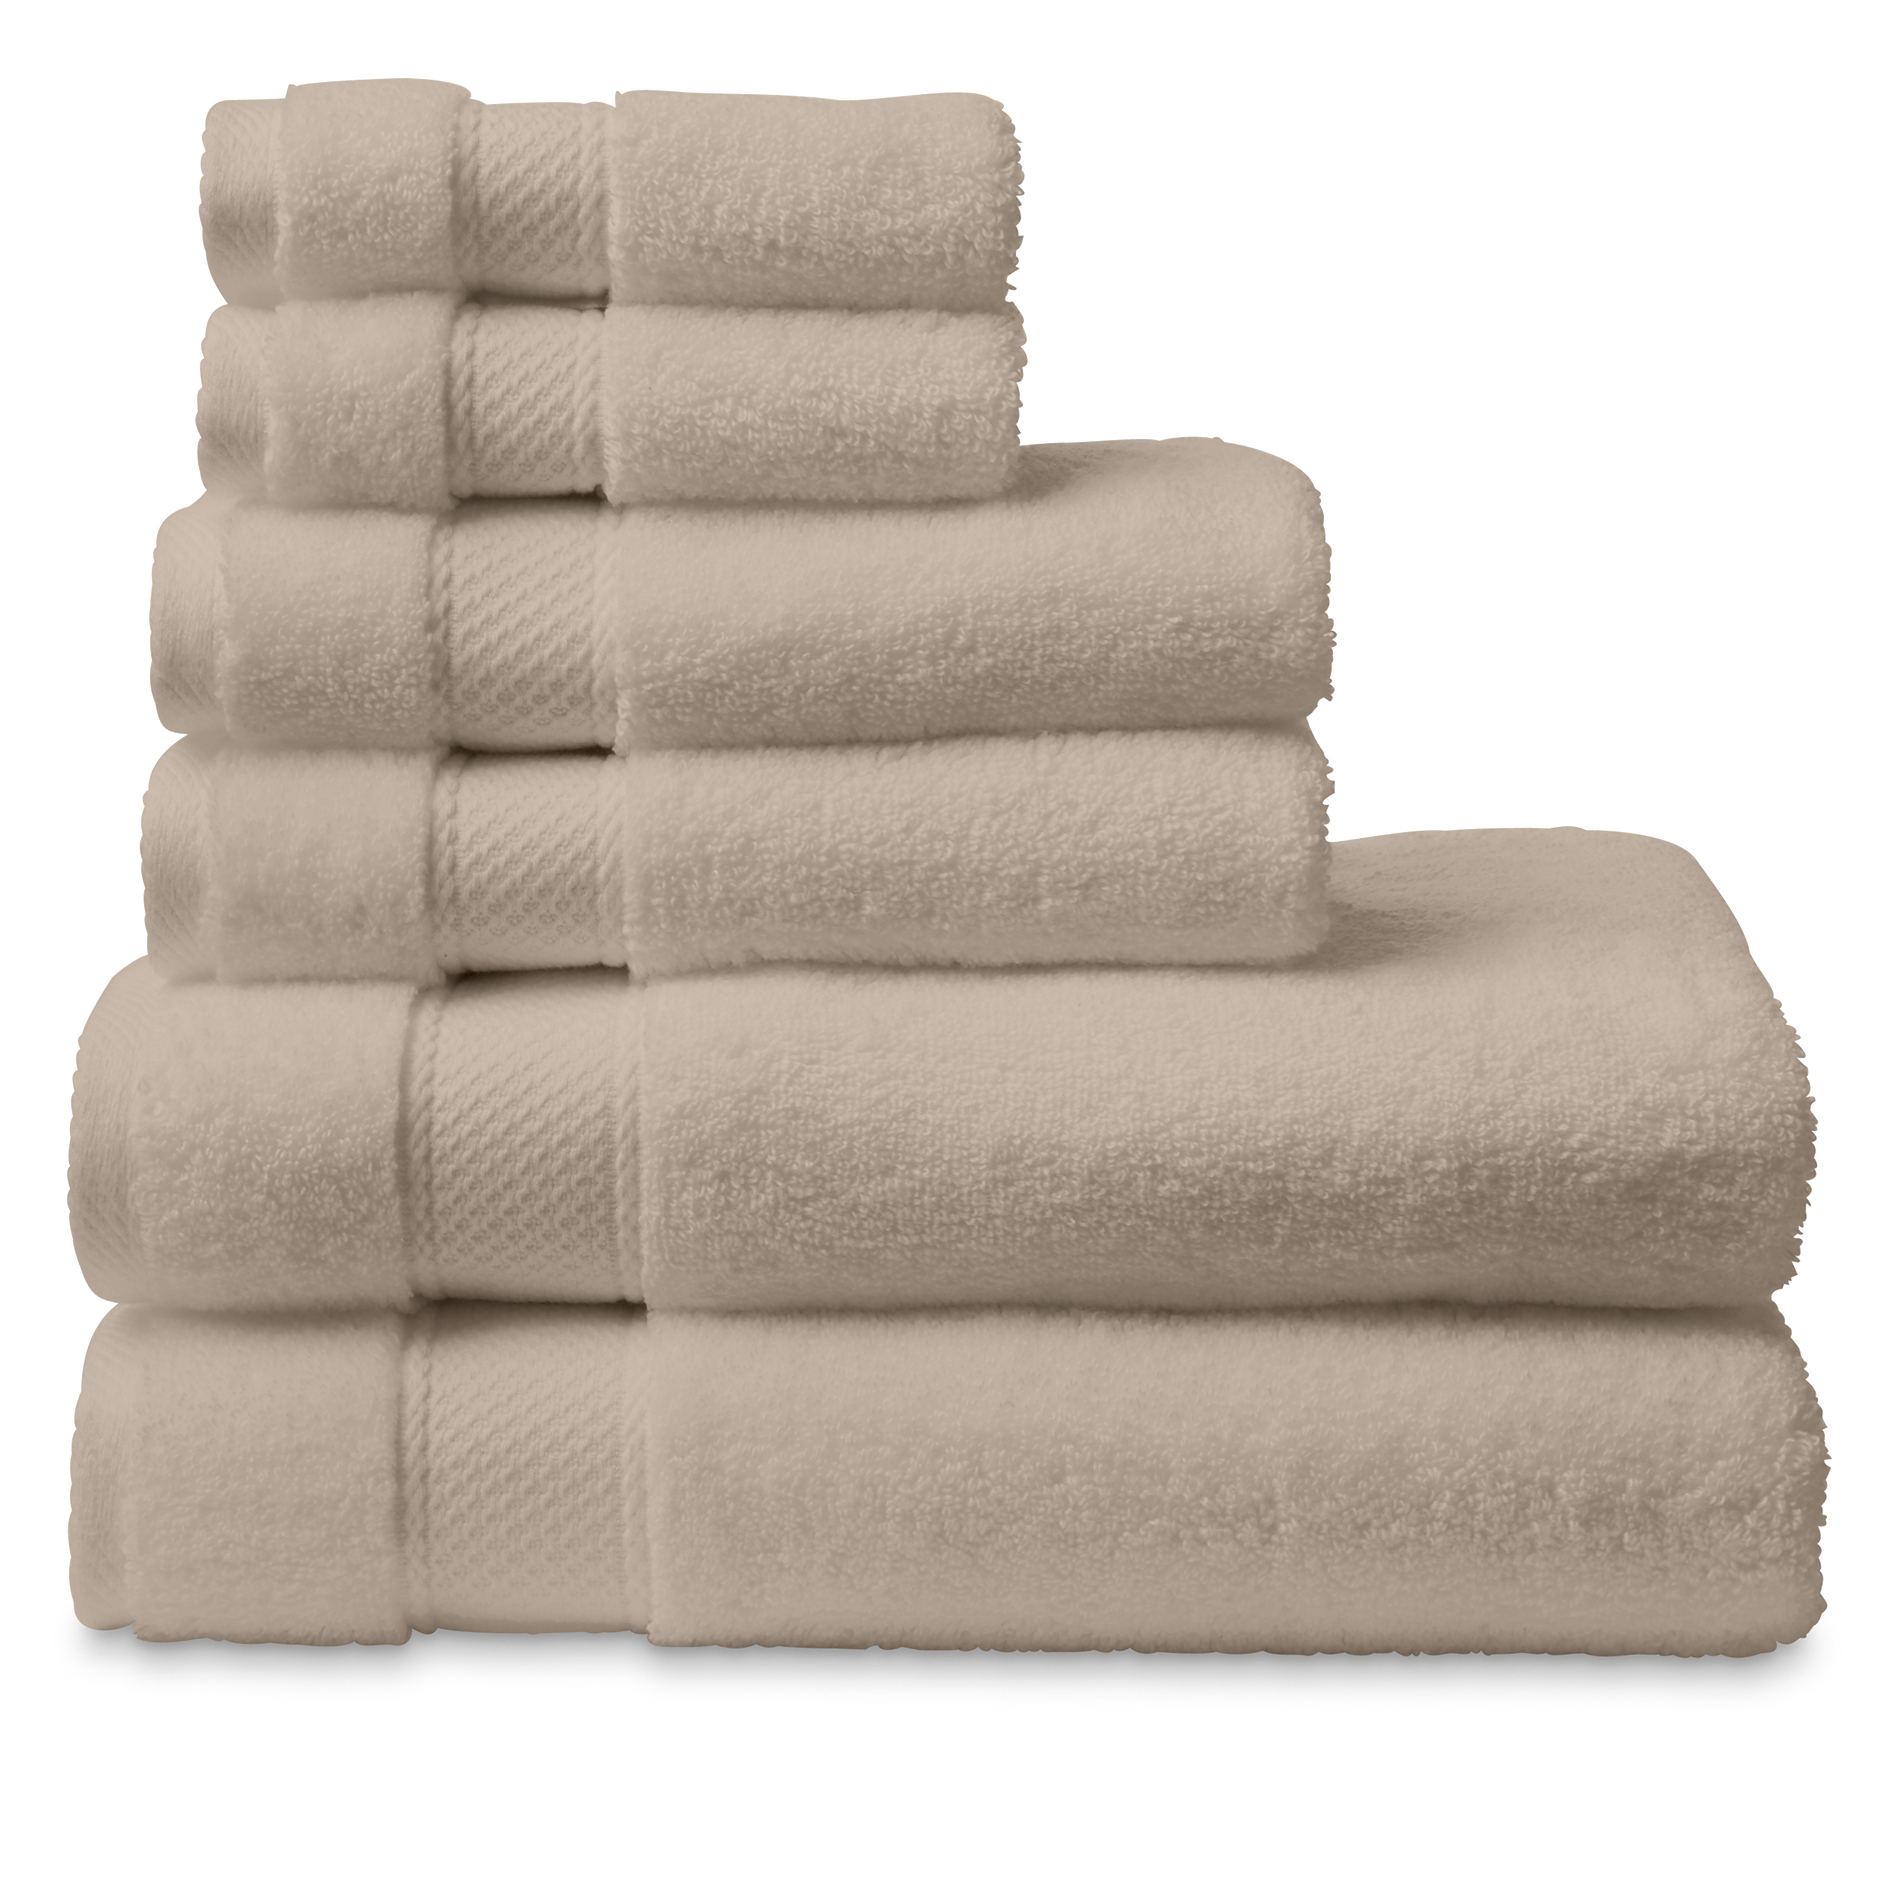 Cannon 6-Piece Egyptian Cotton Bath Towel Set